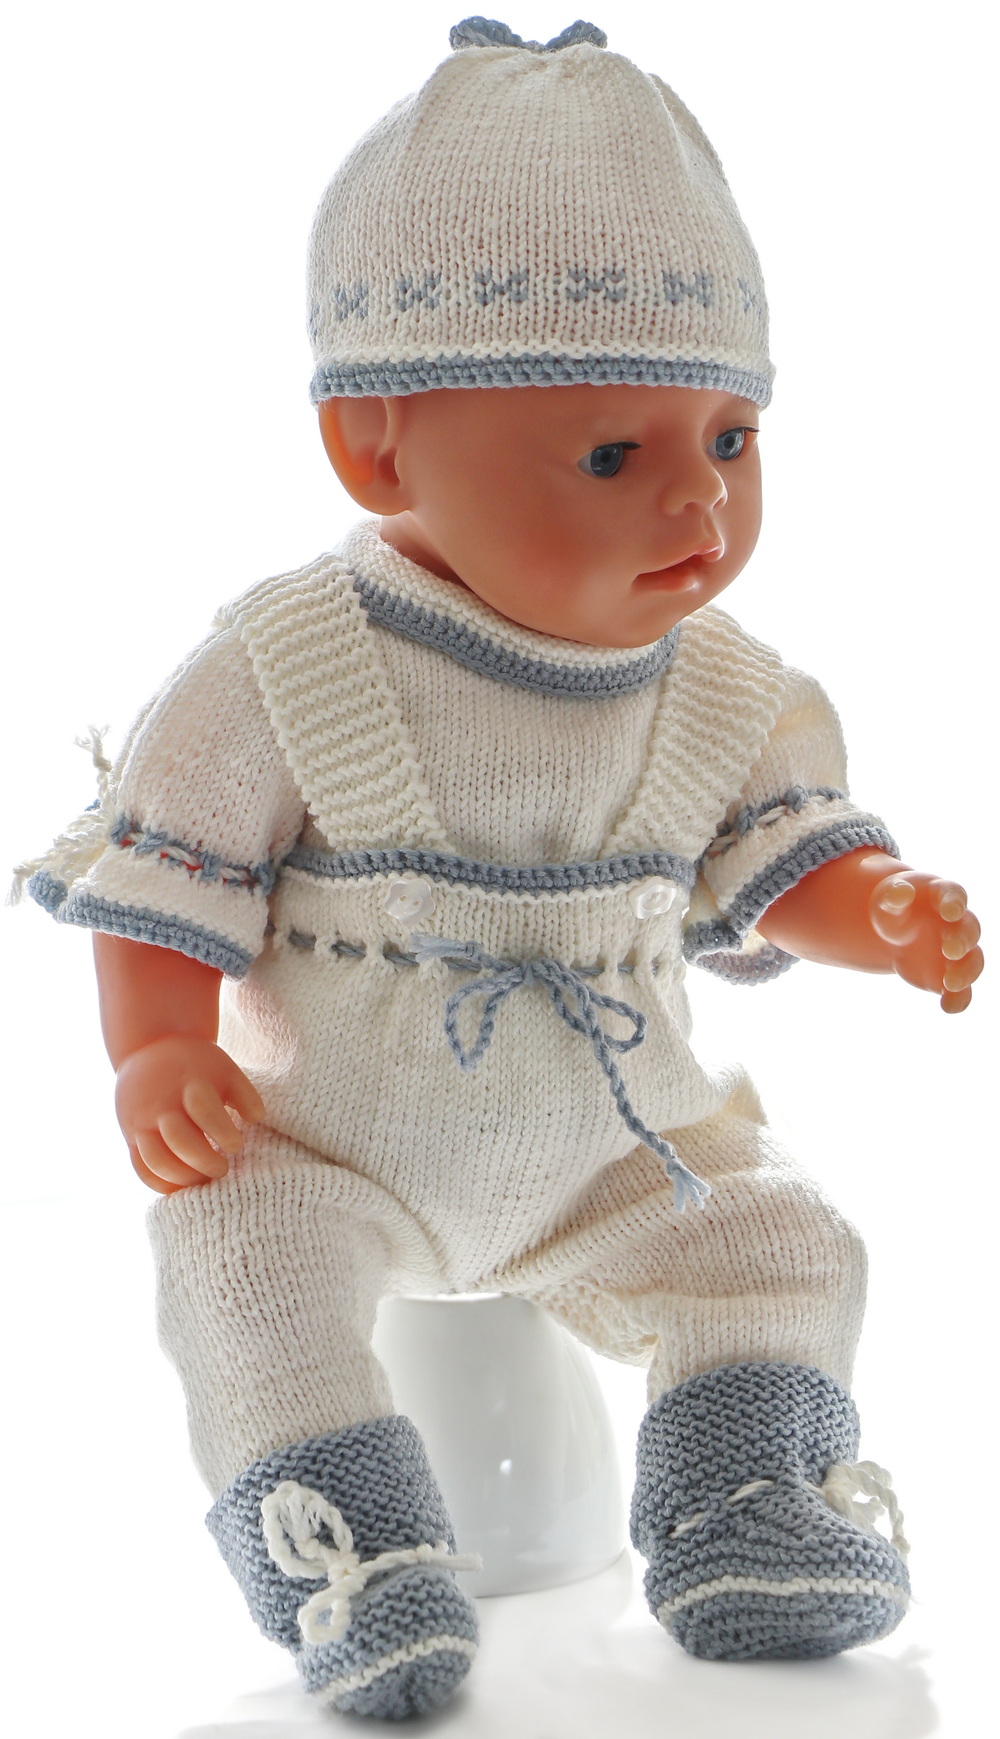 0232d-15-knitting-patterns-for-american-girl-dolls.jpg